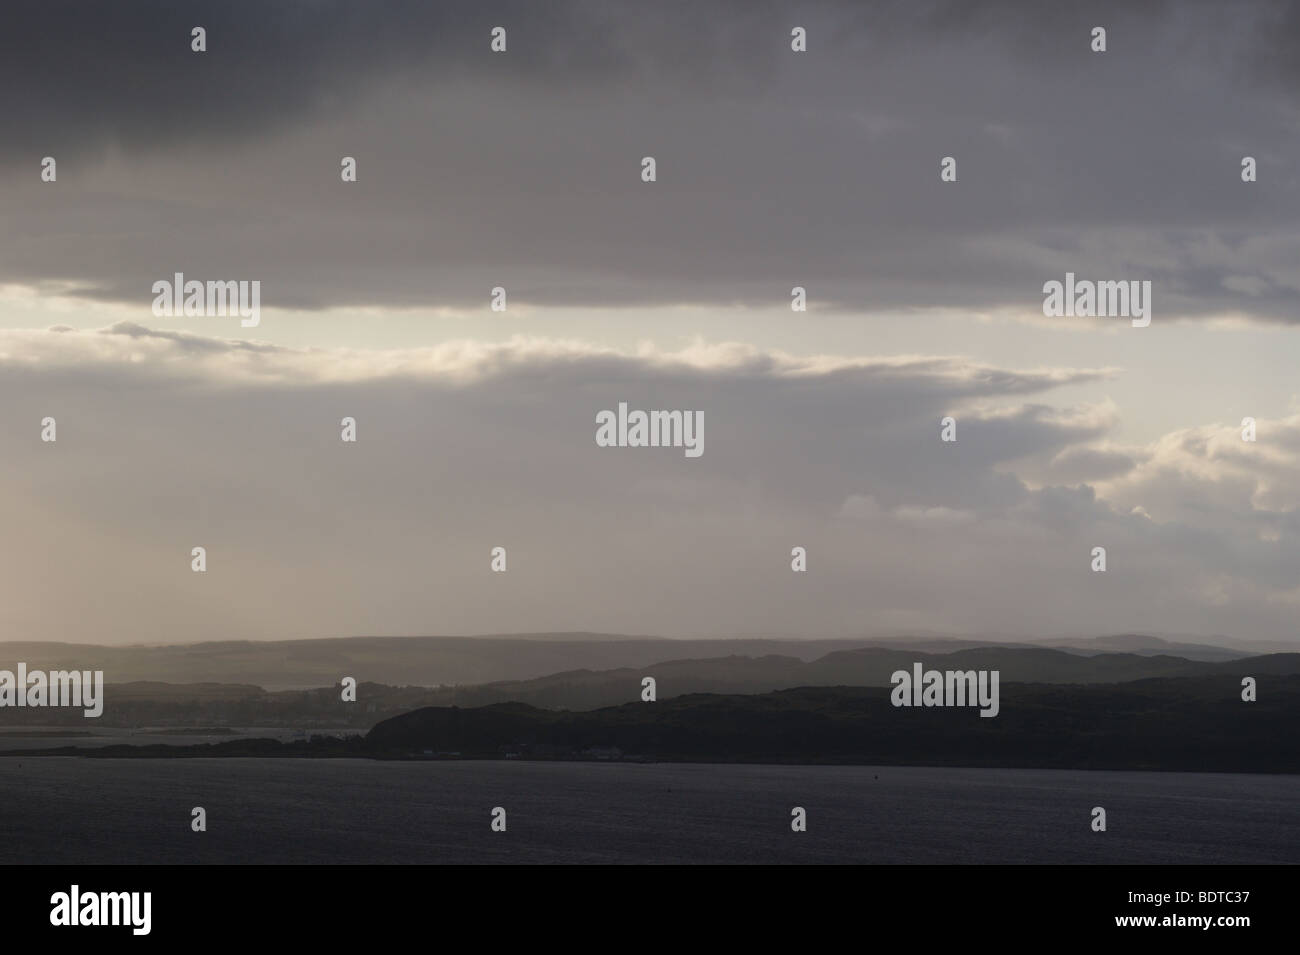 La isla de Arran al atardecer visto desde Fairlie Moor, en Ayrshire, Escocia Foto de stock